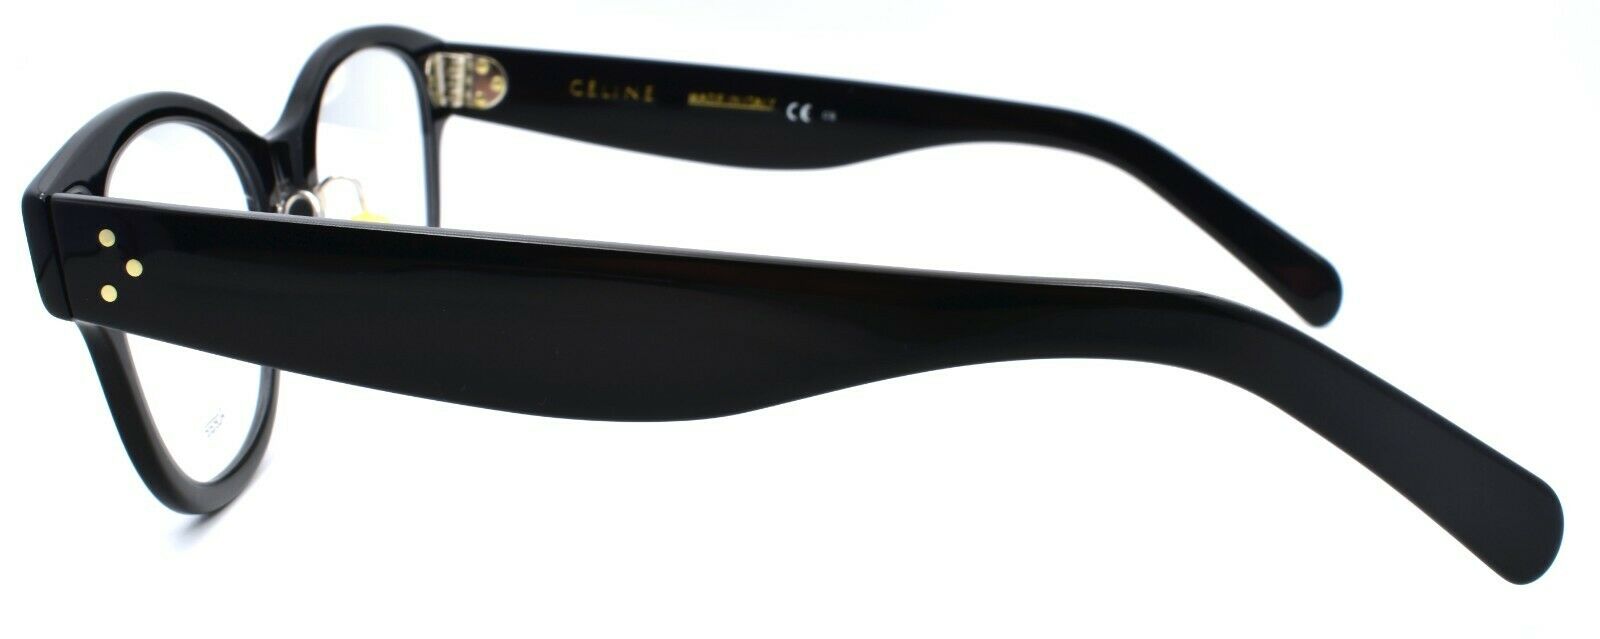 3-Celine CL 41437/F 06Z Eyeglasses Frames Asian Fit 51-20-150 Black-762753276148-IKSpecs